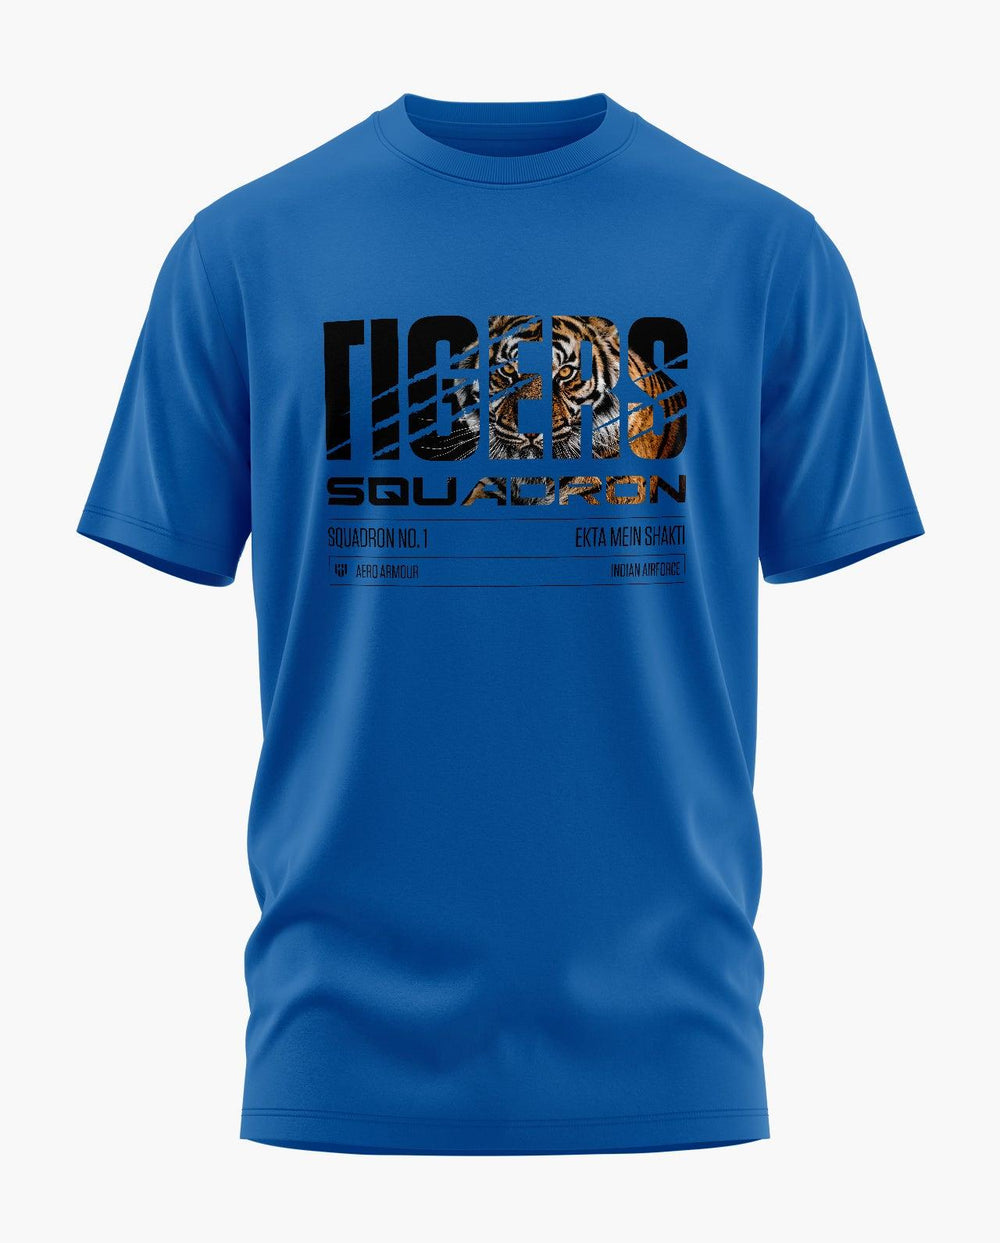 Tiger Squadron T-Shirt - Aero Armour